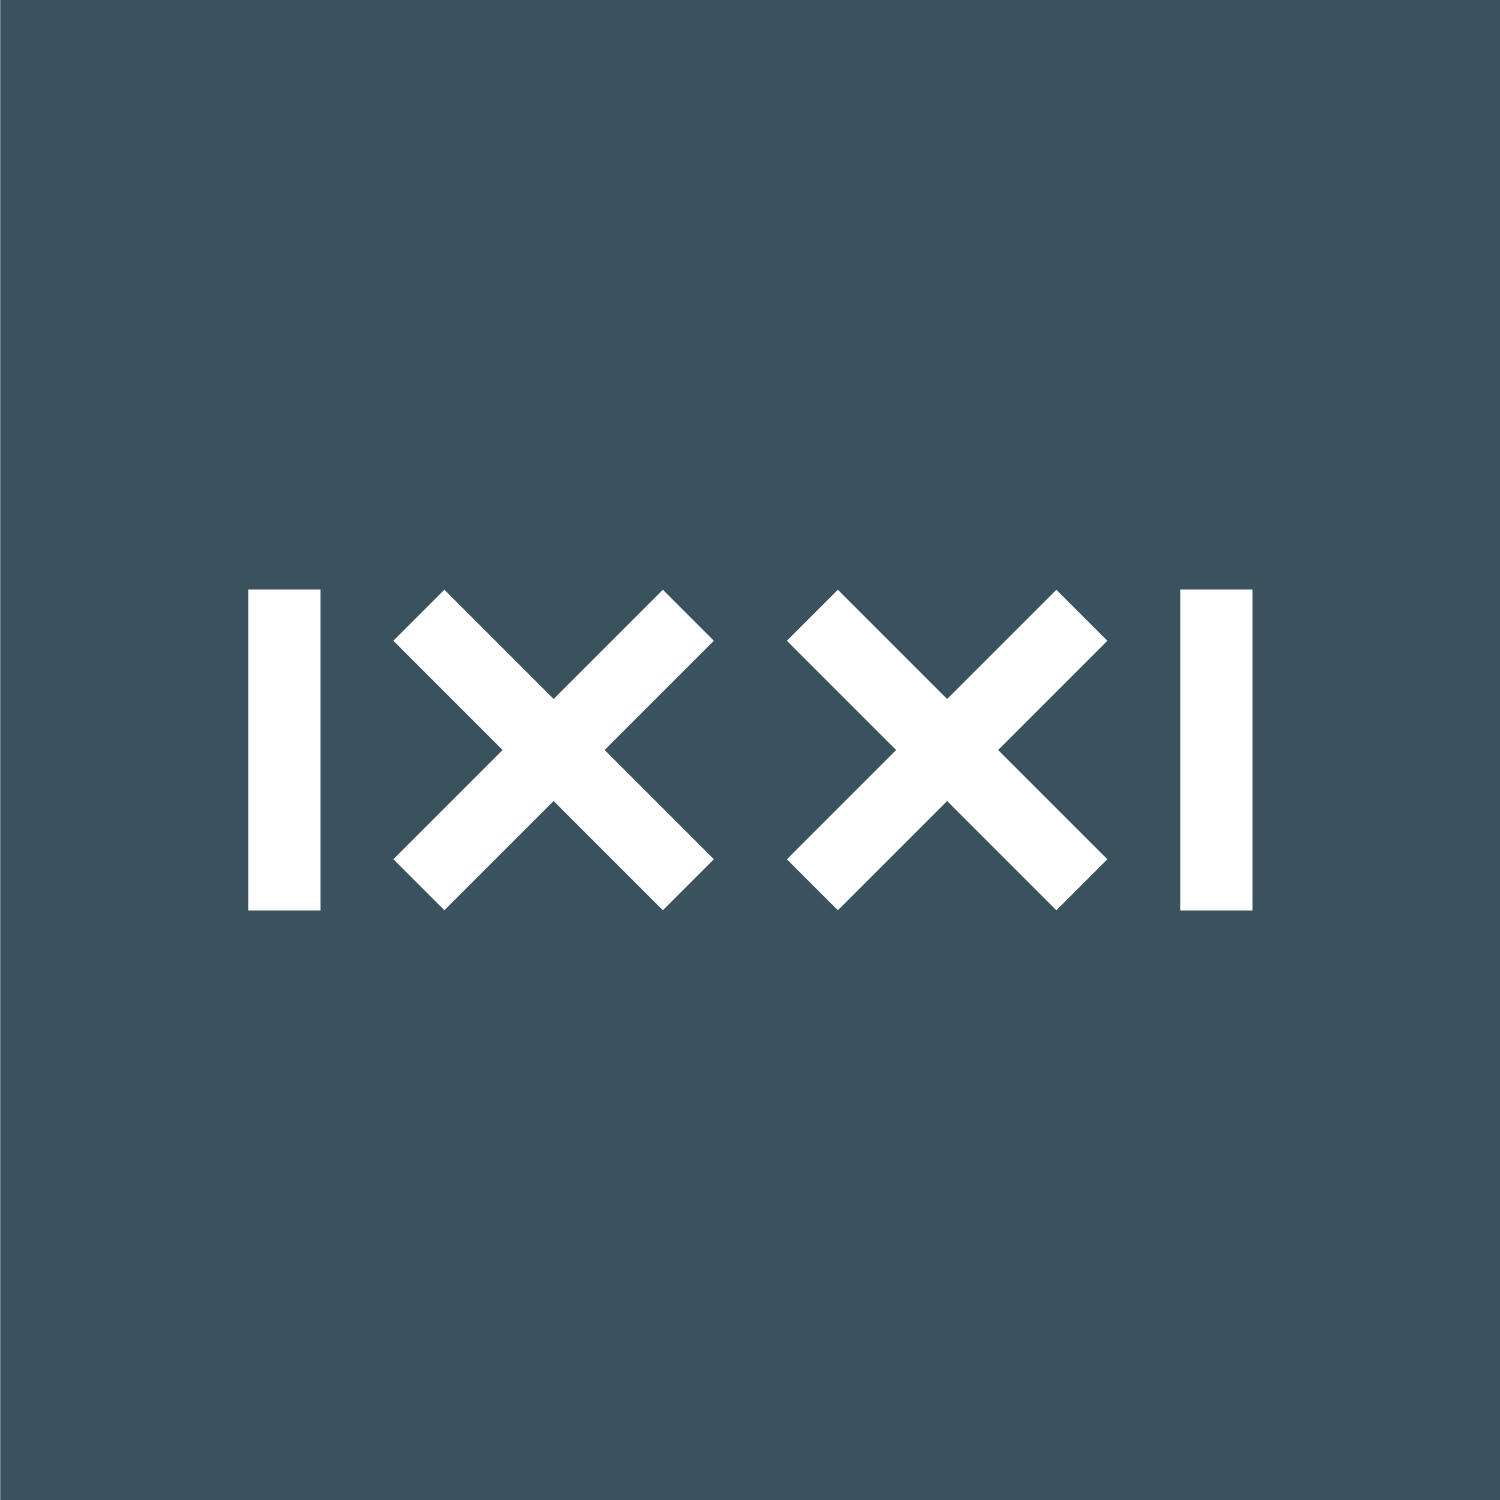 IXXI